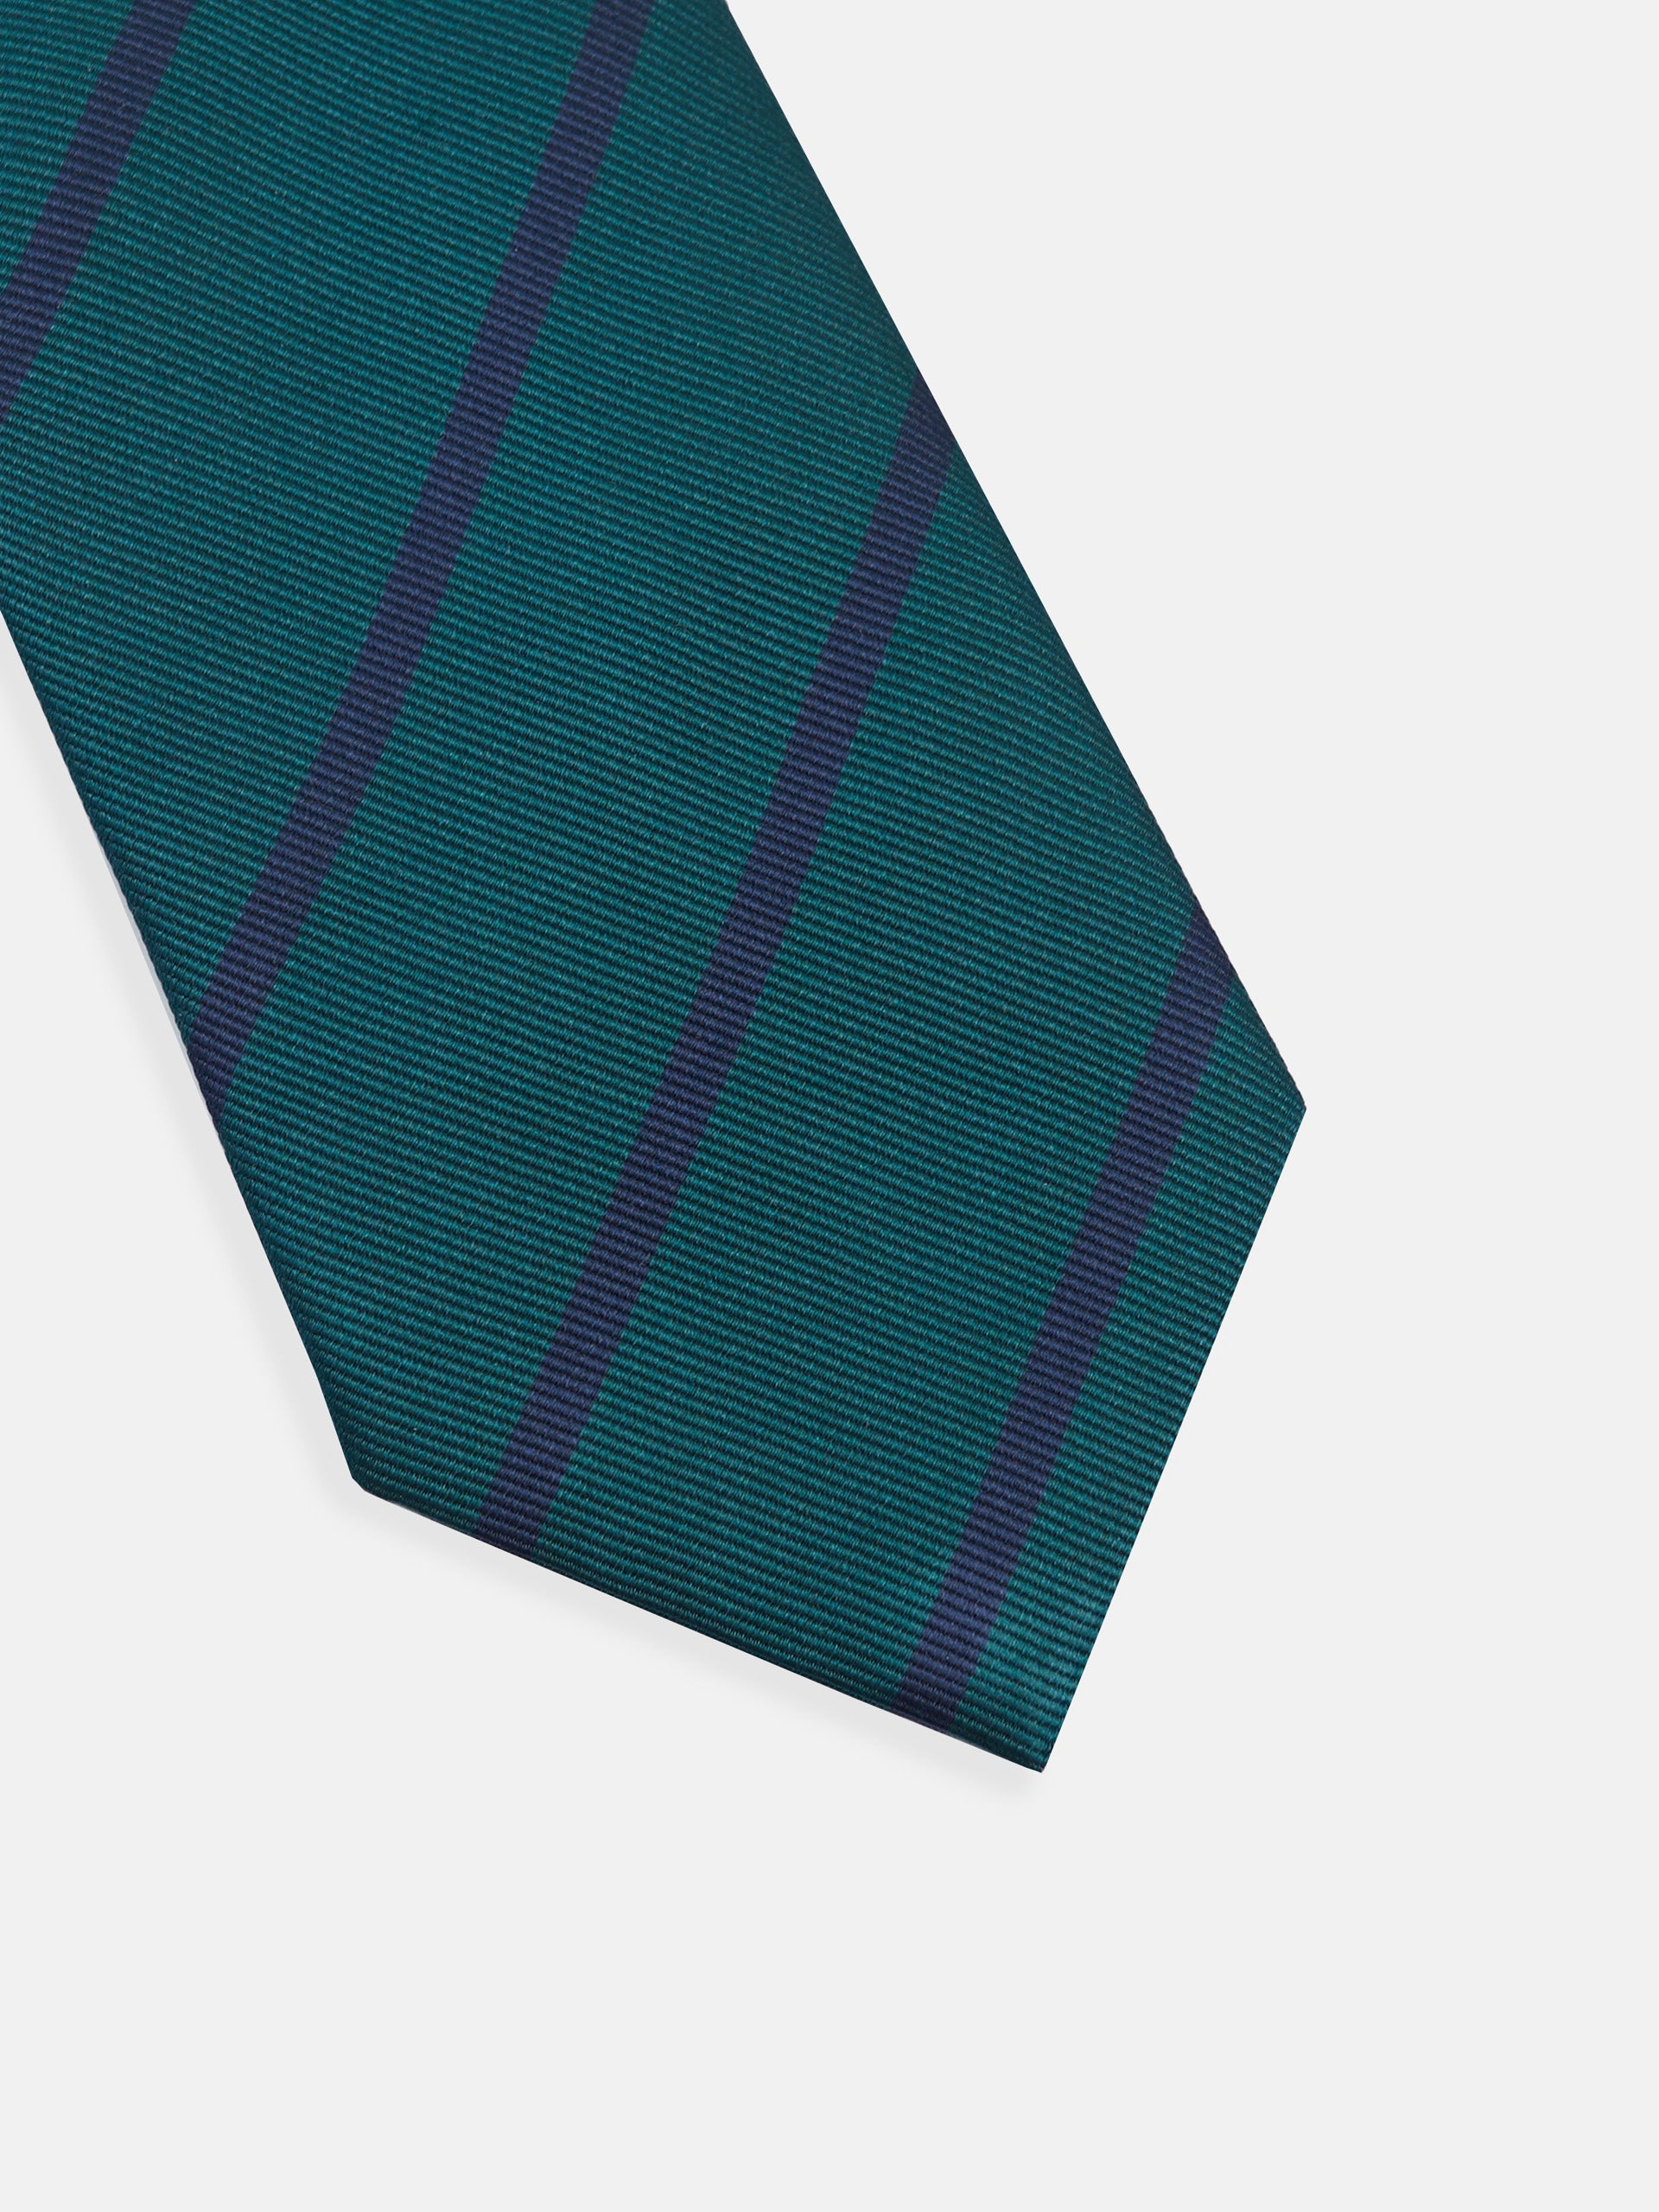 Cravate à rayures vertes